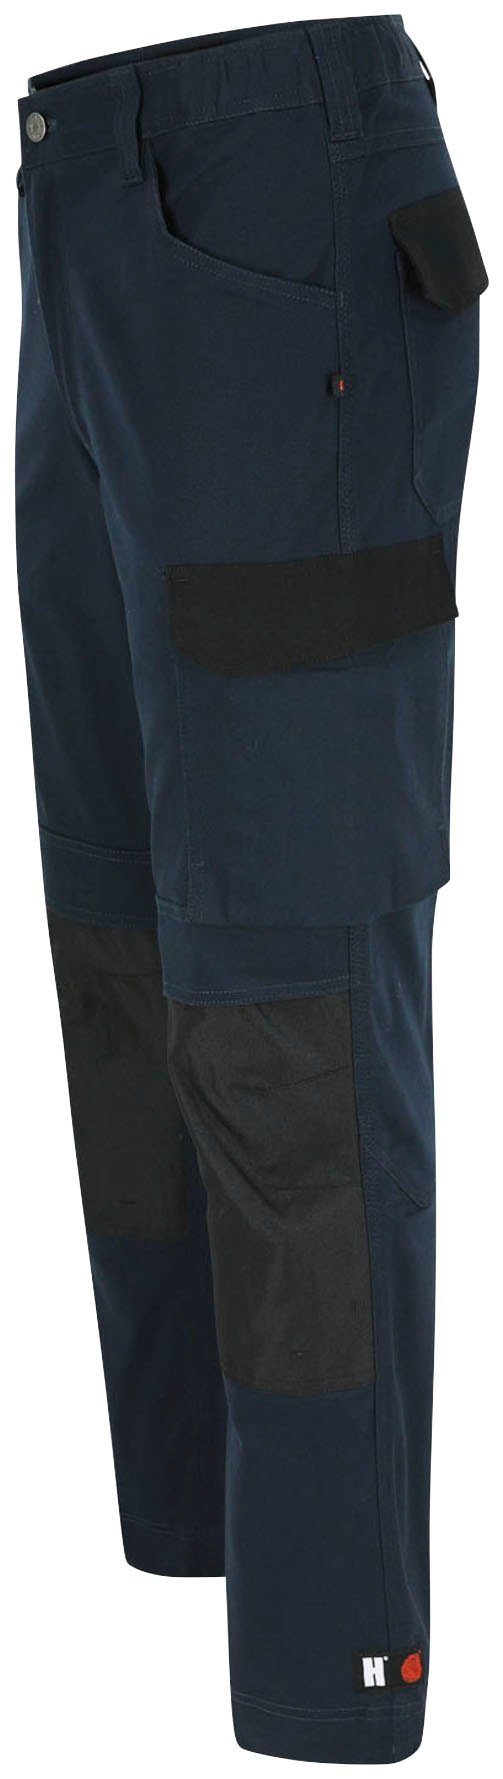 Herock Arbeitshose DERO Slim Fit Multi-Pocket, wasserabweisend marine Passform, 2-Wege-Stretch